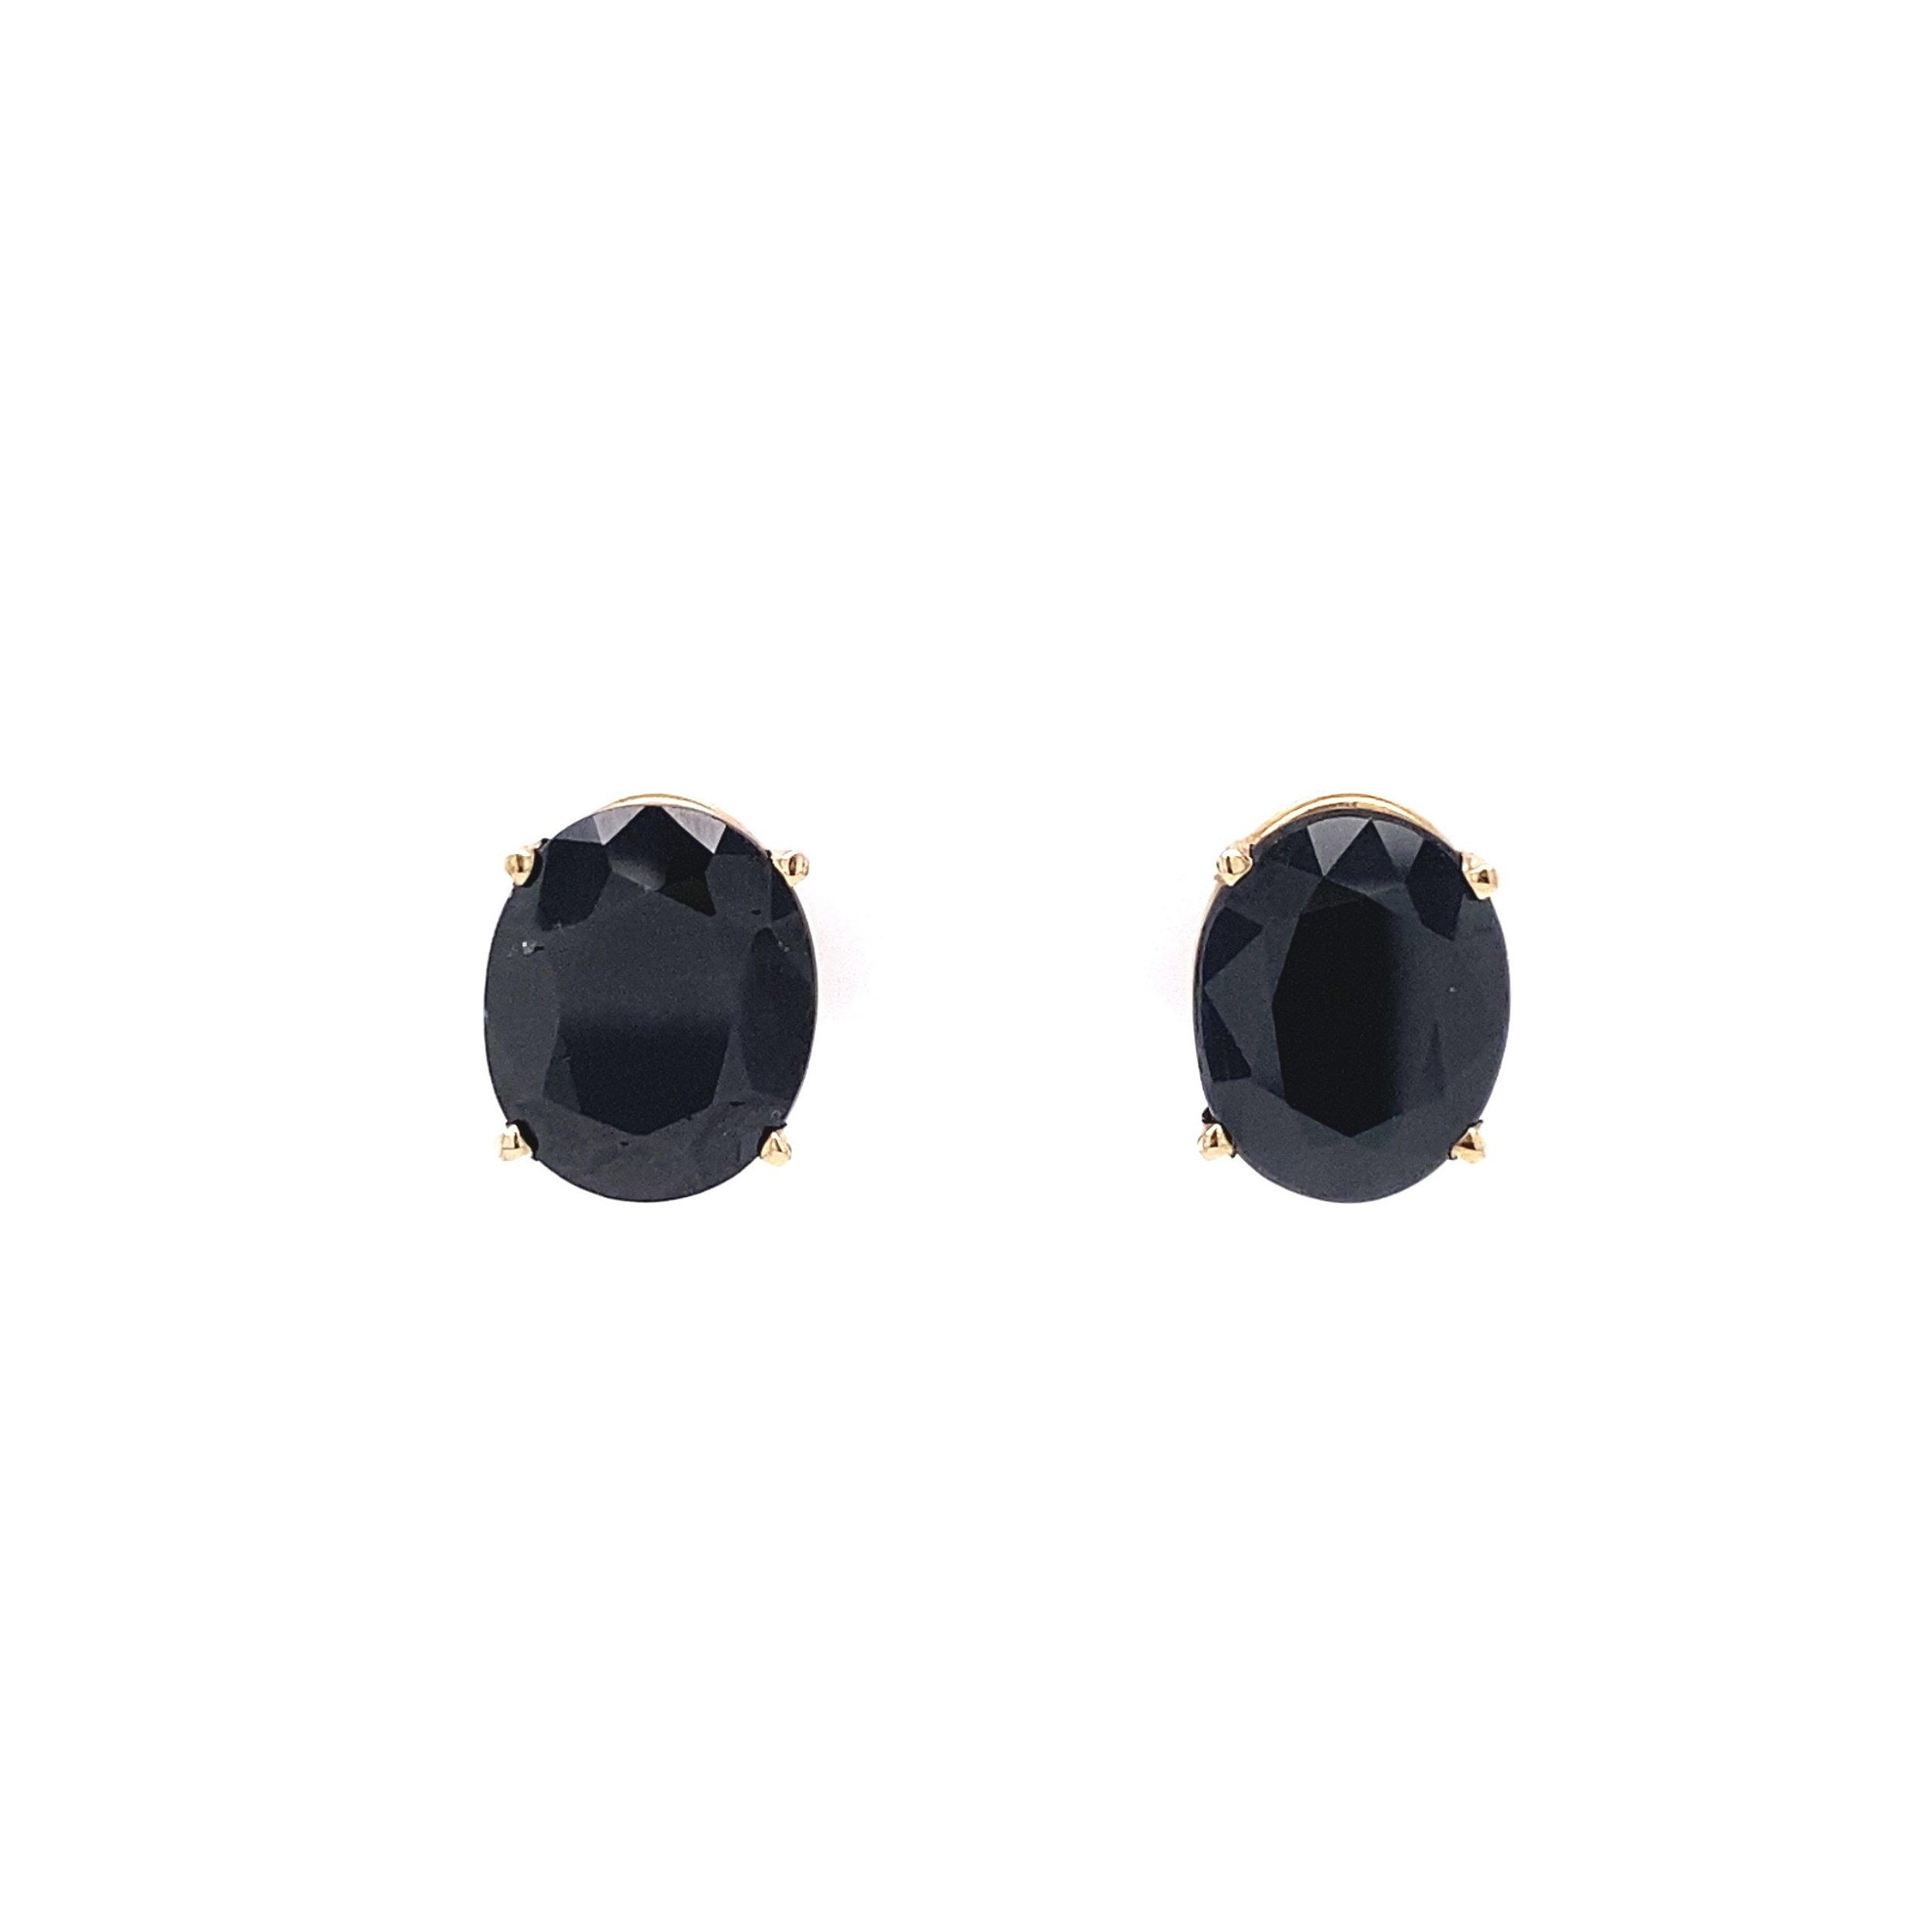 10K YG 7tcw Oval Sapphire Stud Earrings 2.4g